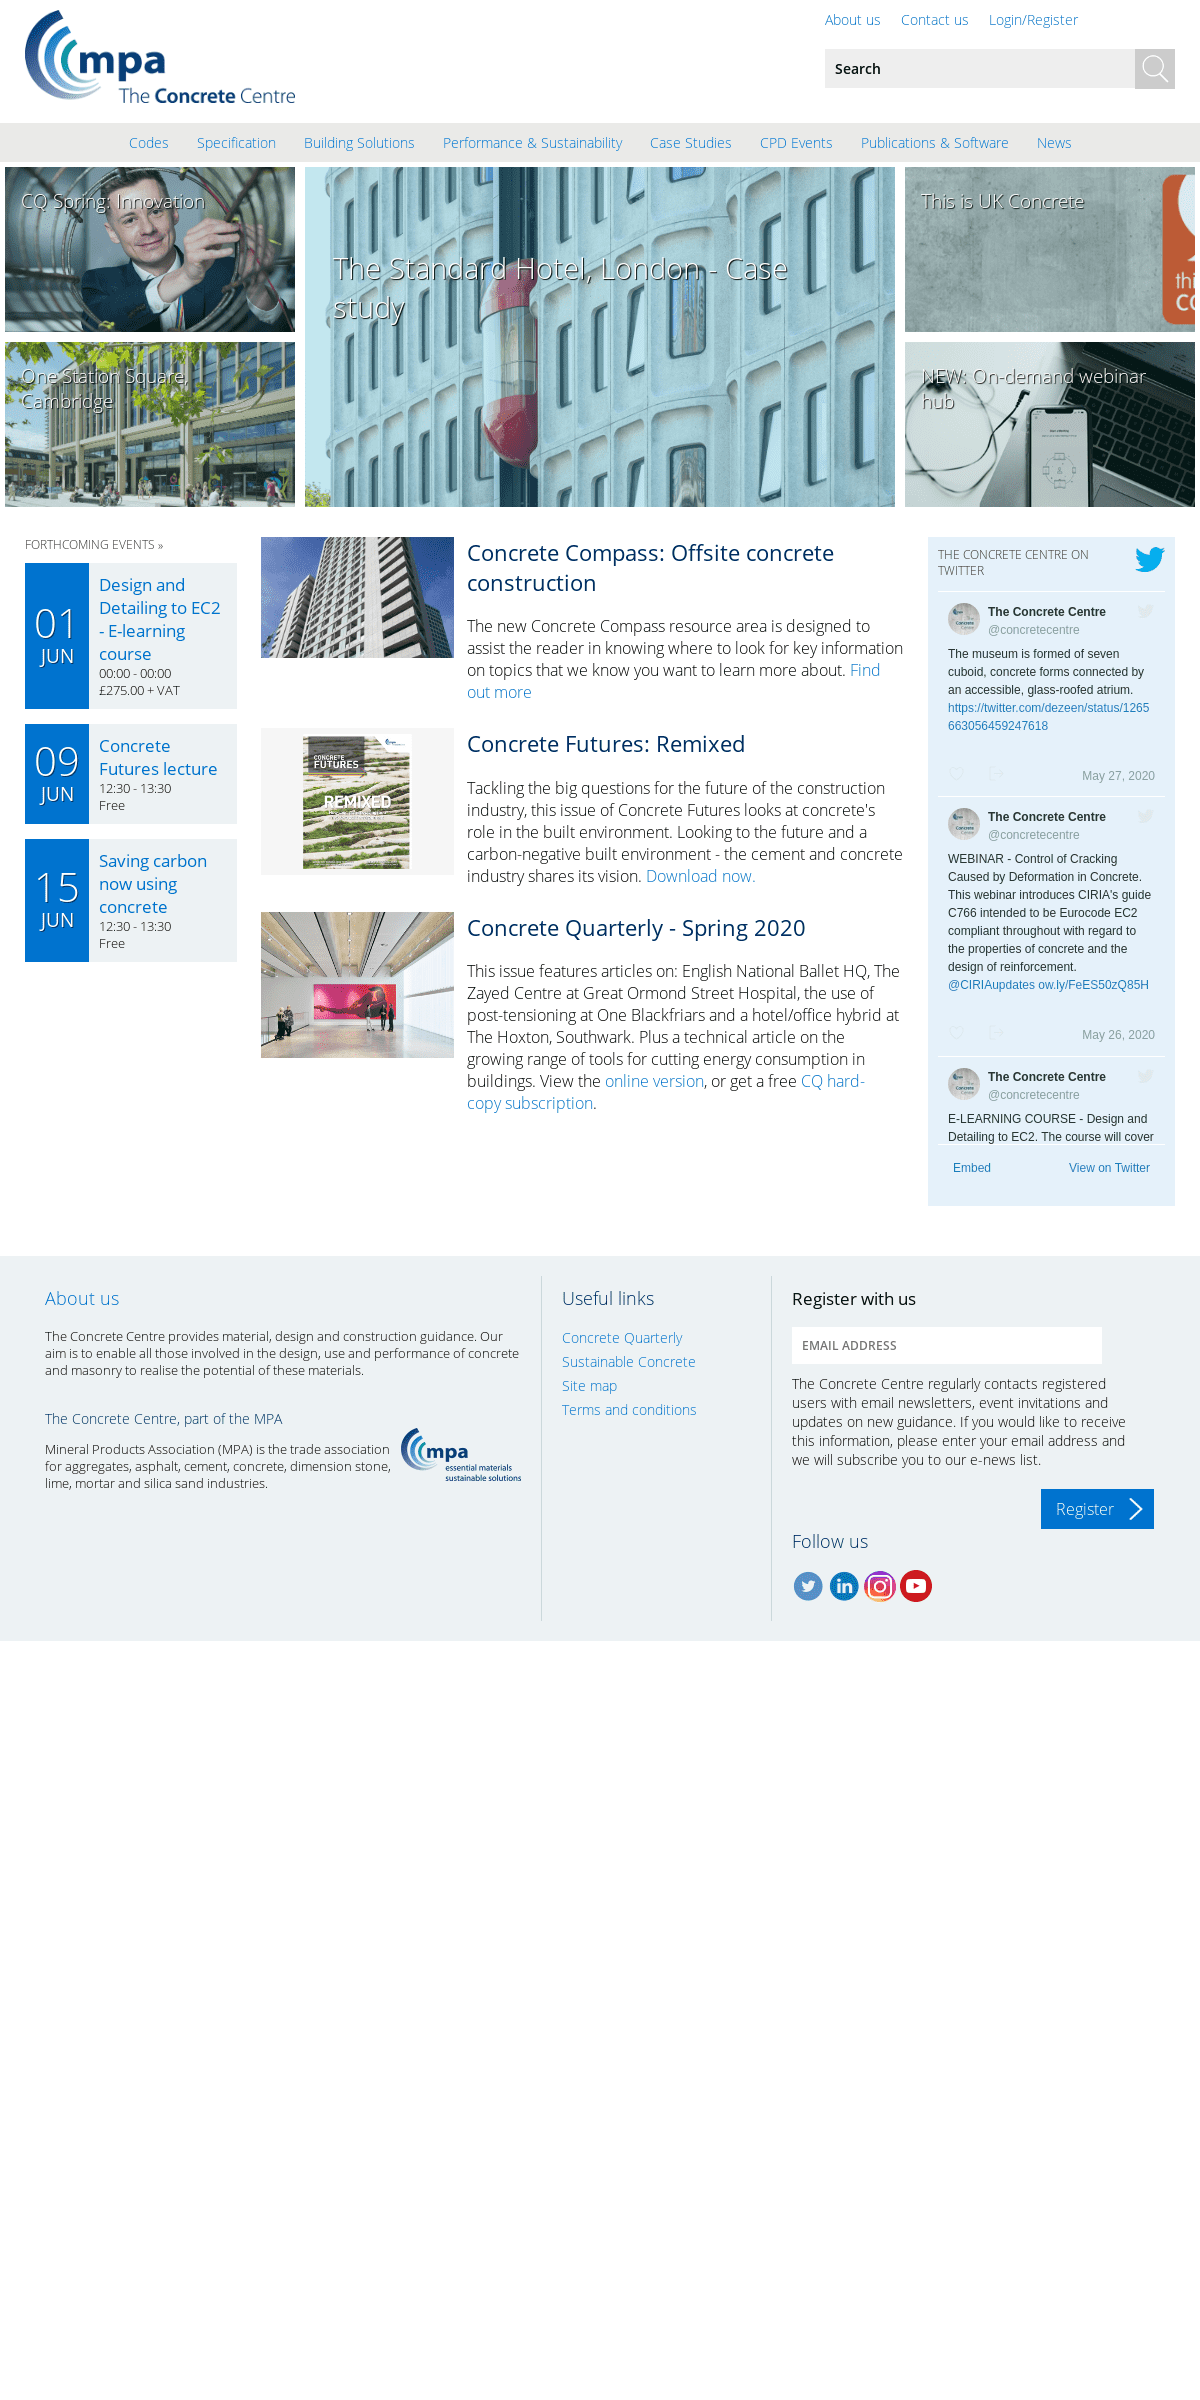 A complete backup of concretecentre.com